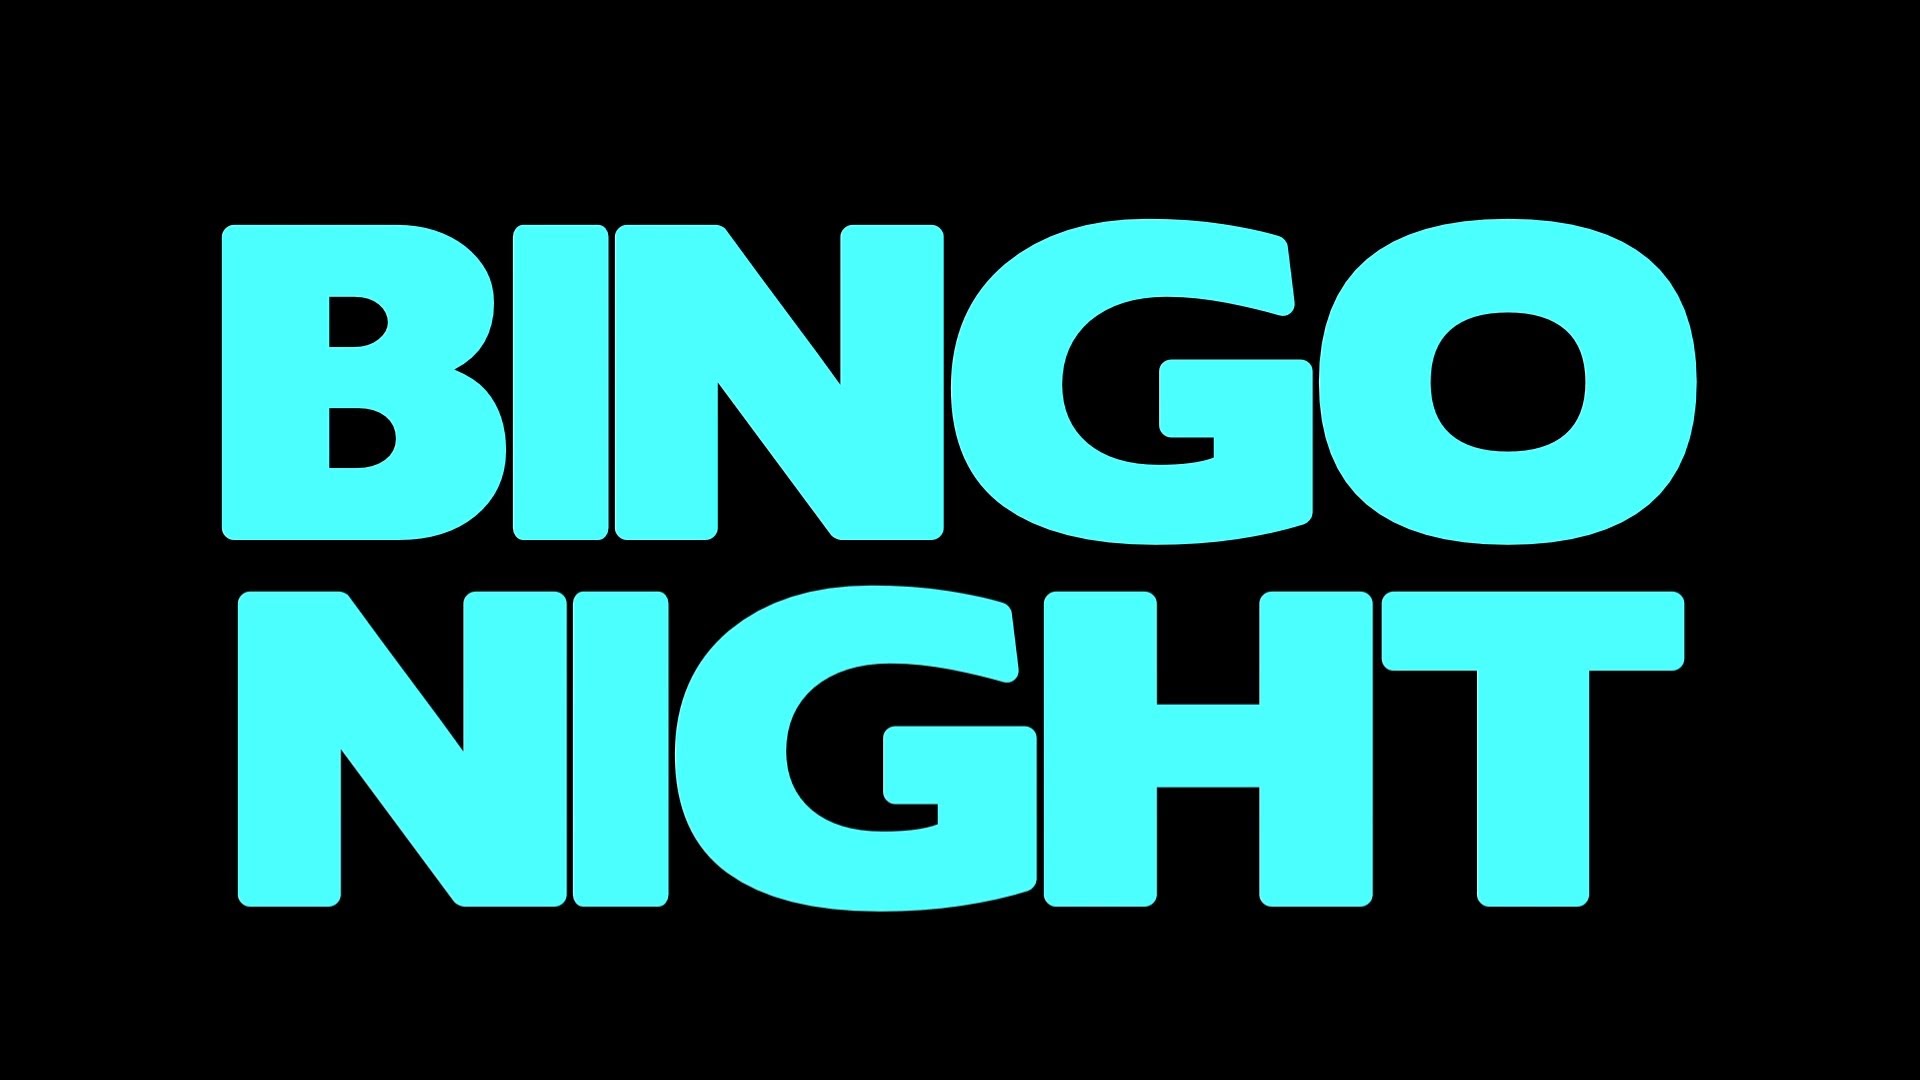 Bingo Night | Short Film Trailer
